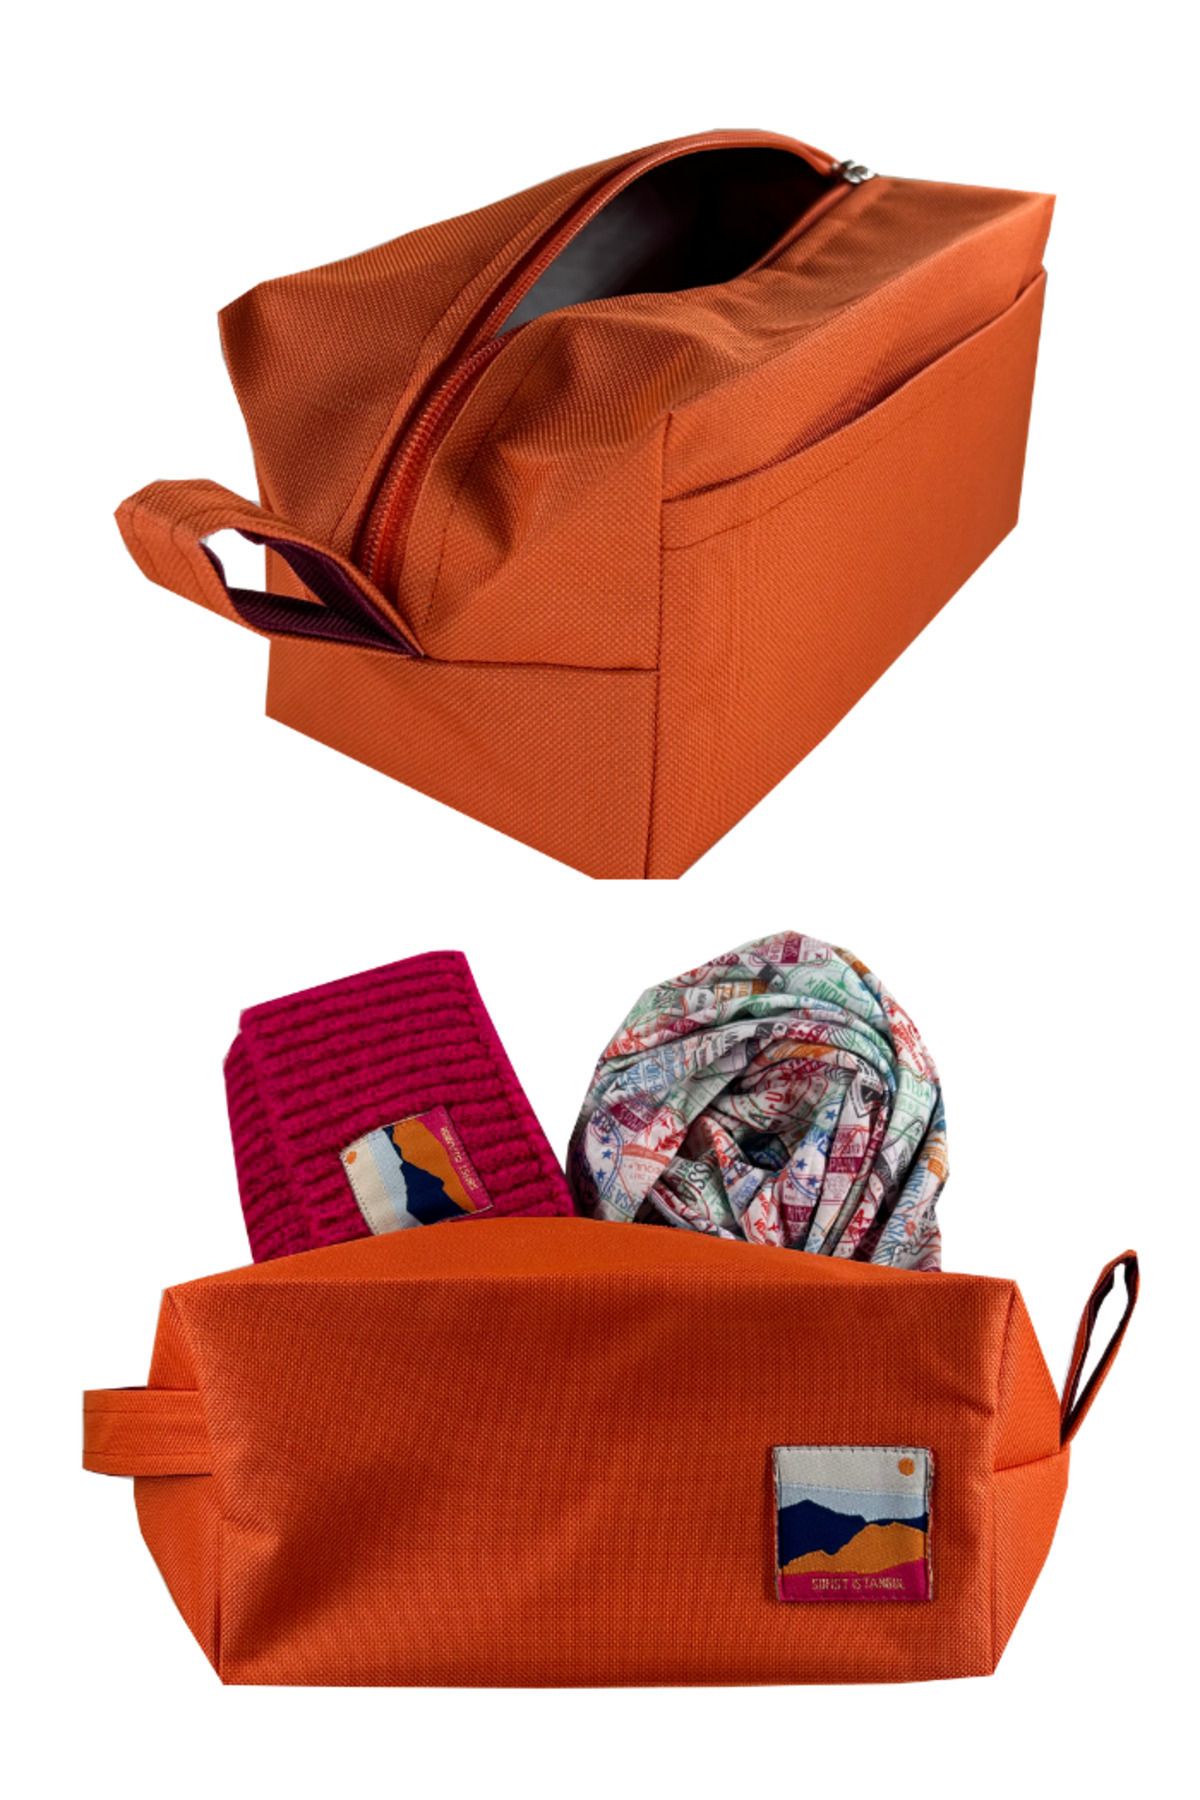 Sofist İstanbul Orange Make Up & Travel Bag Organizer Turuncu Mini Makyaj ve Seyahat Çantası